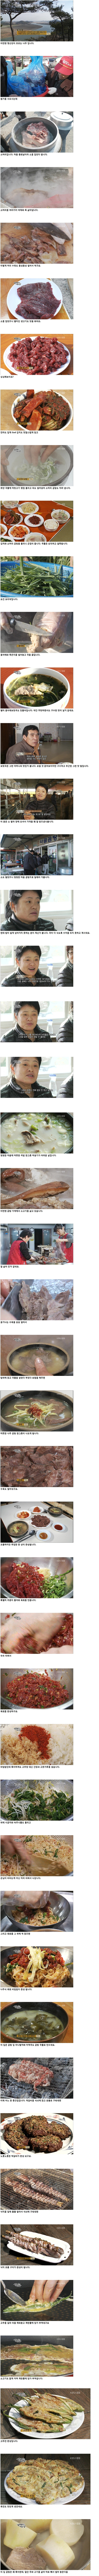 한국인의 밥상 - 나주곰탕 (스압)